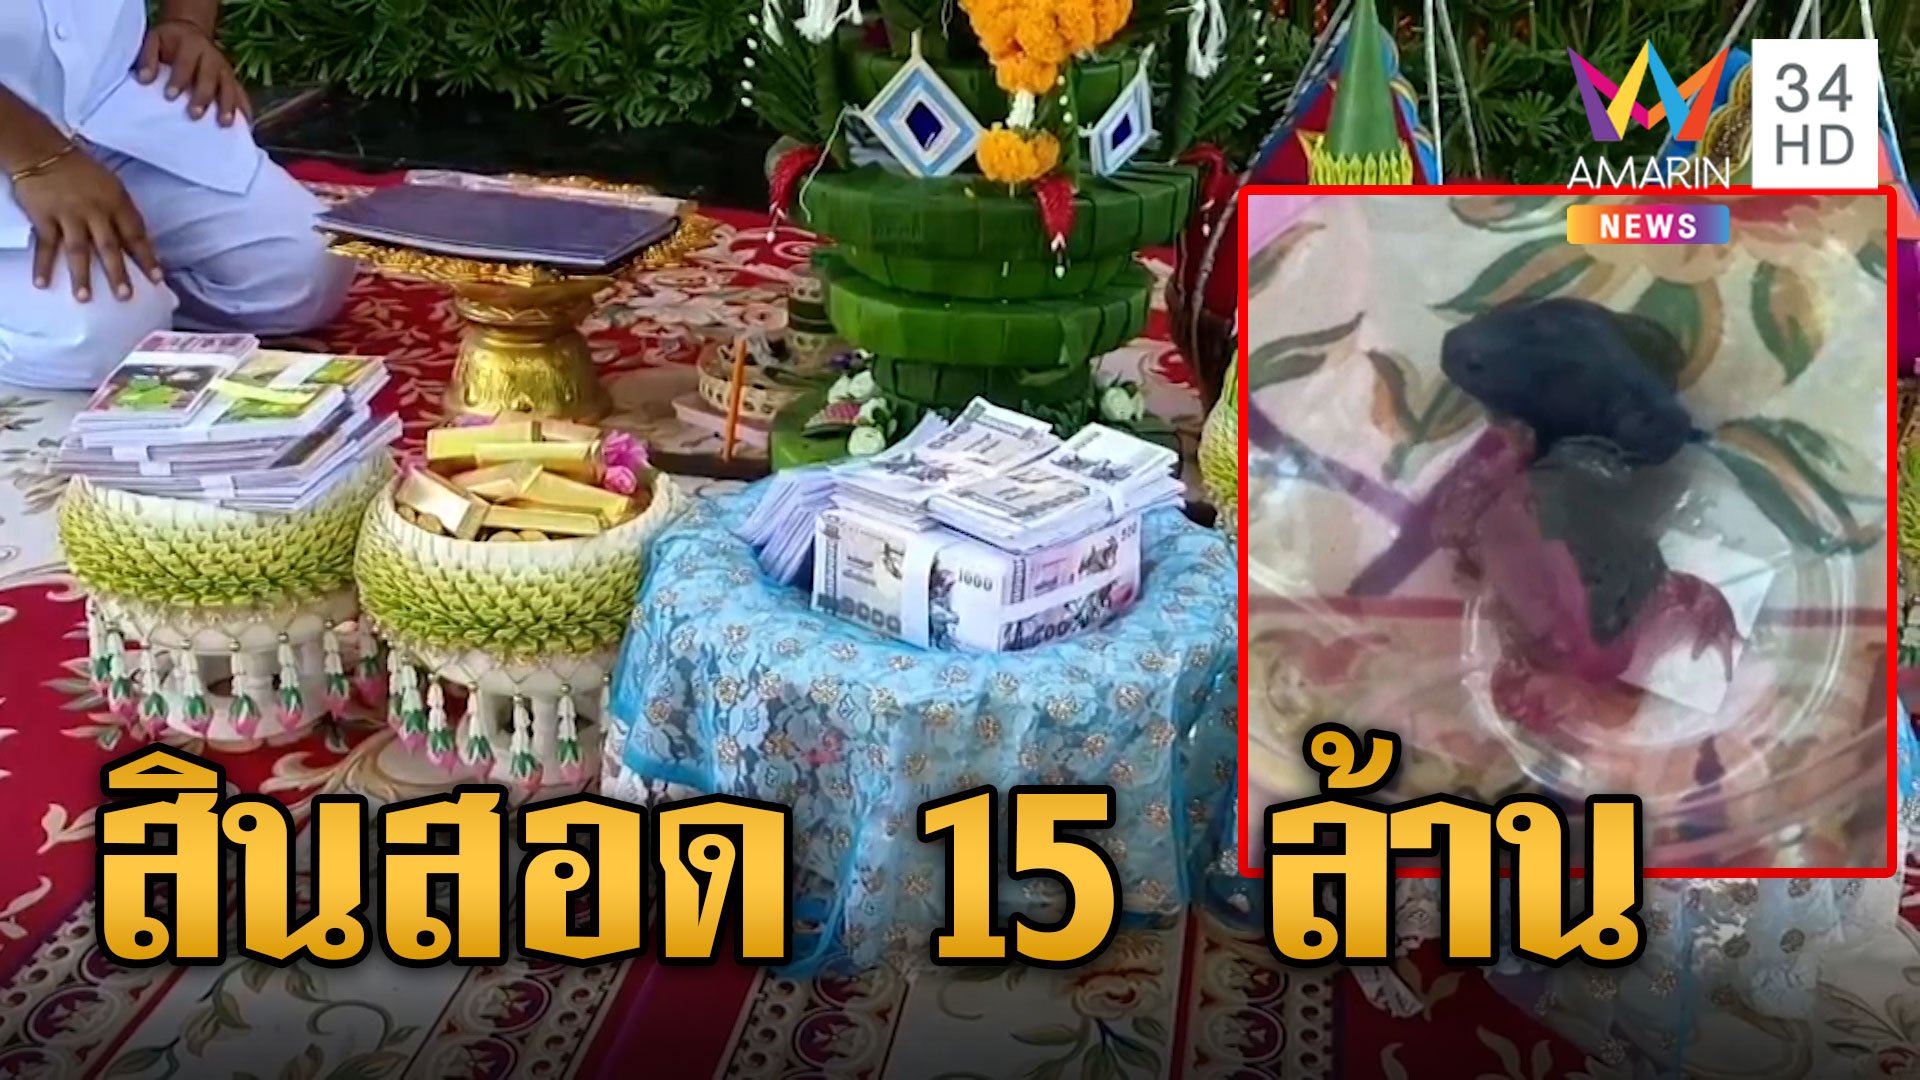 หนึ่งเดียวในโลก! อึ่งลาวยกขันหมากขอแต่งอึ่งอ่างสาวไทย สินสอด 15 ล้าน | ข่าวอรุณอมรินทร์ | 10 ก.ค. 66 | AMARIN TVHD34